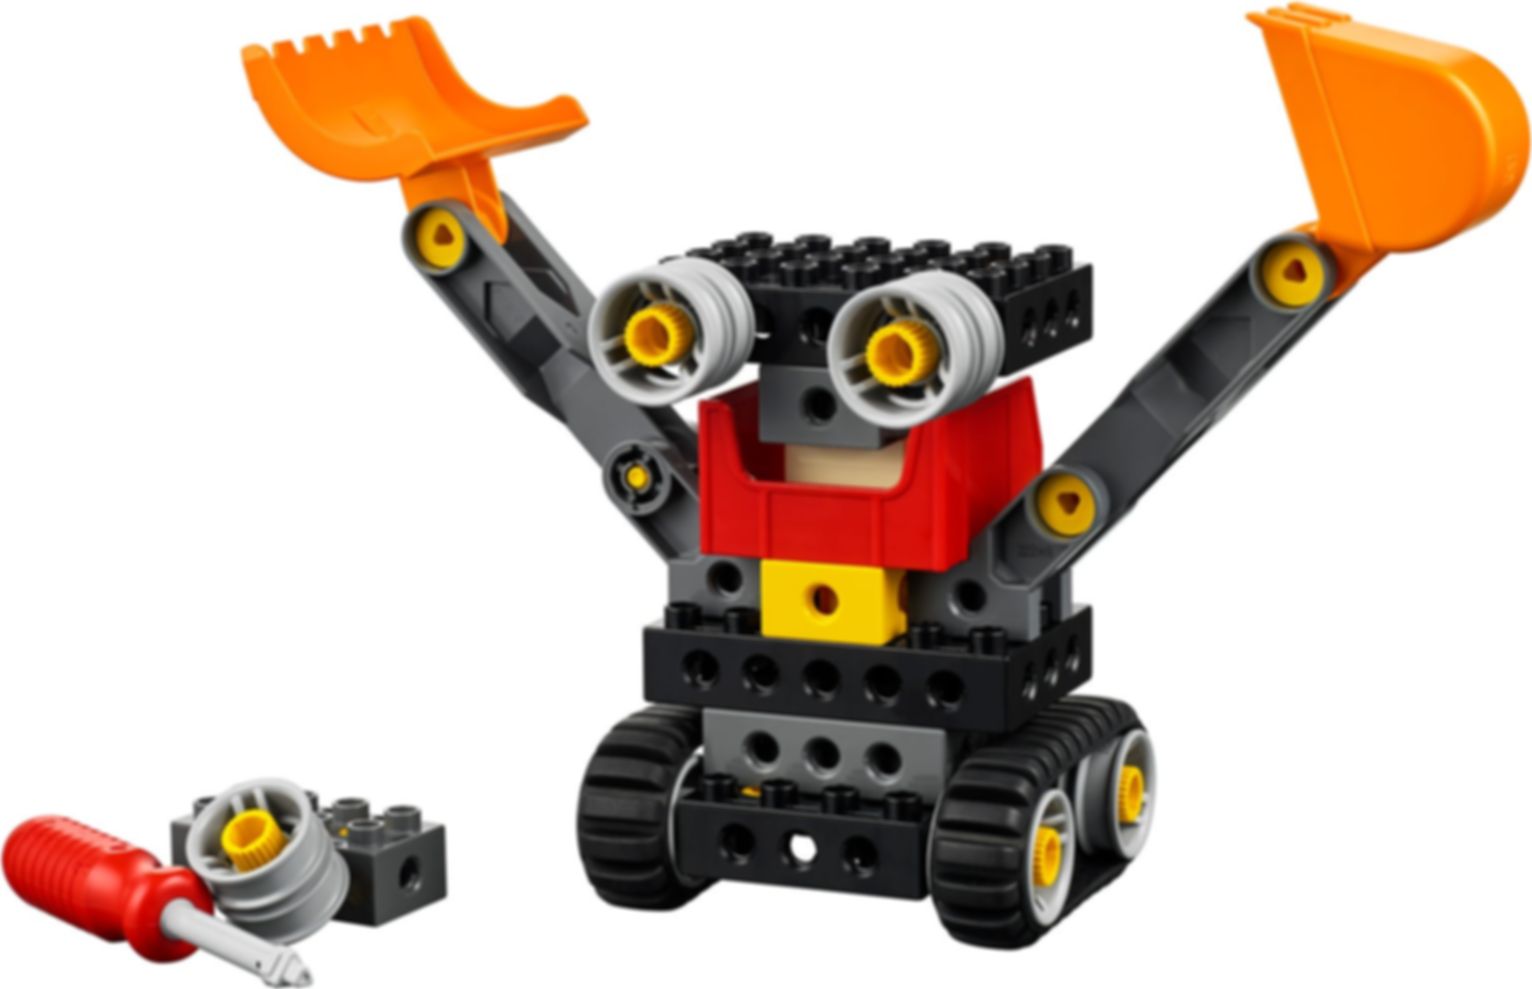 LEGO® Education Máquinas Avanzadas partes